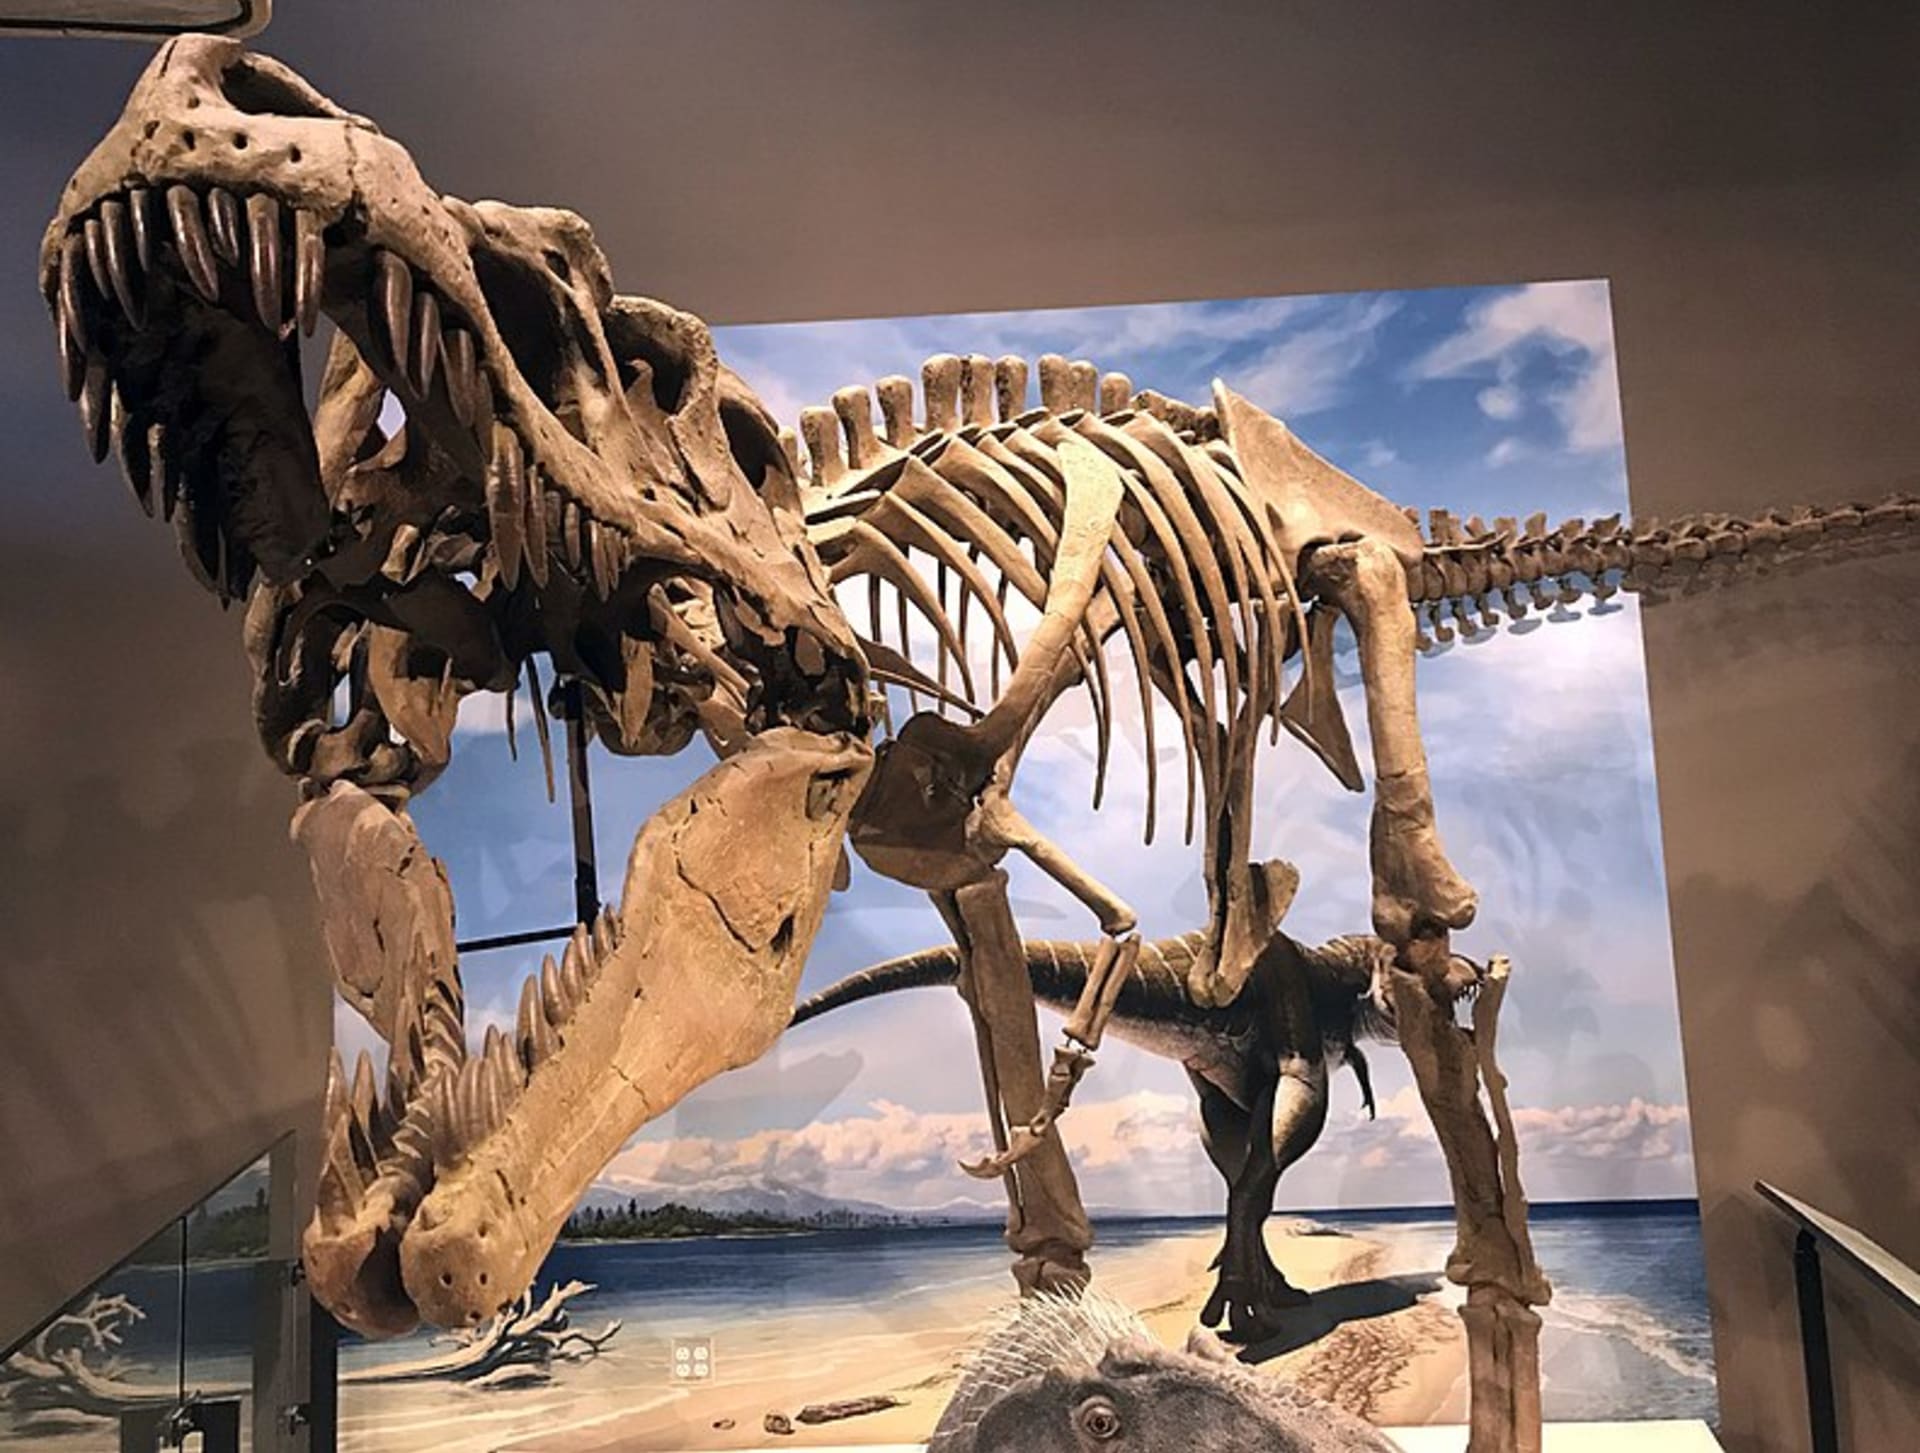 Lythronax měl jako jeden z mála masožravých dinosaurů možnost binokulárního vidění